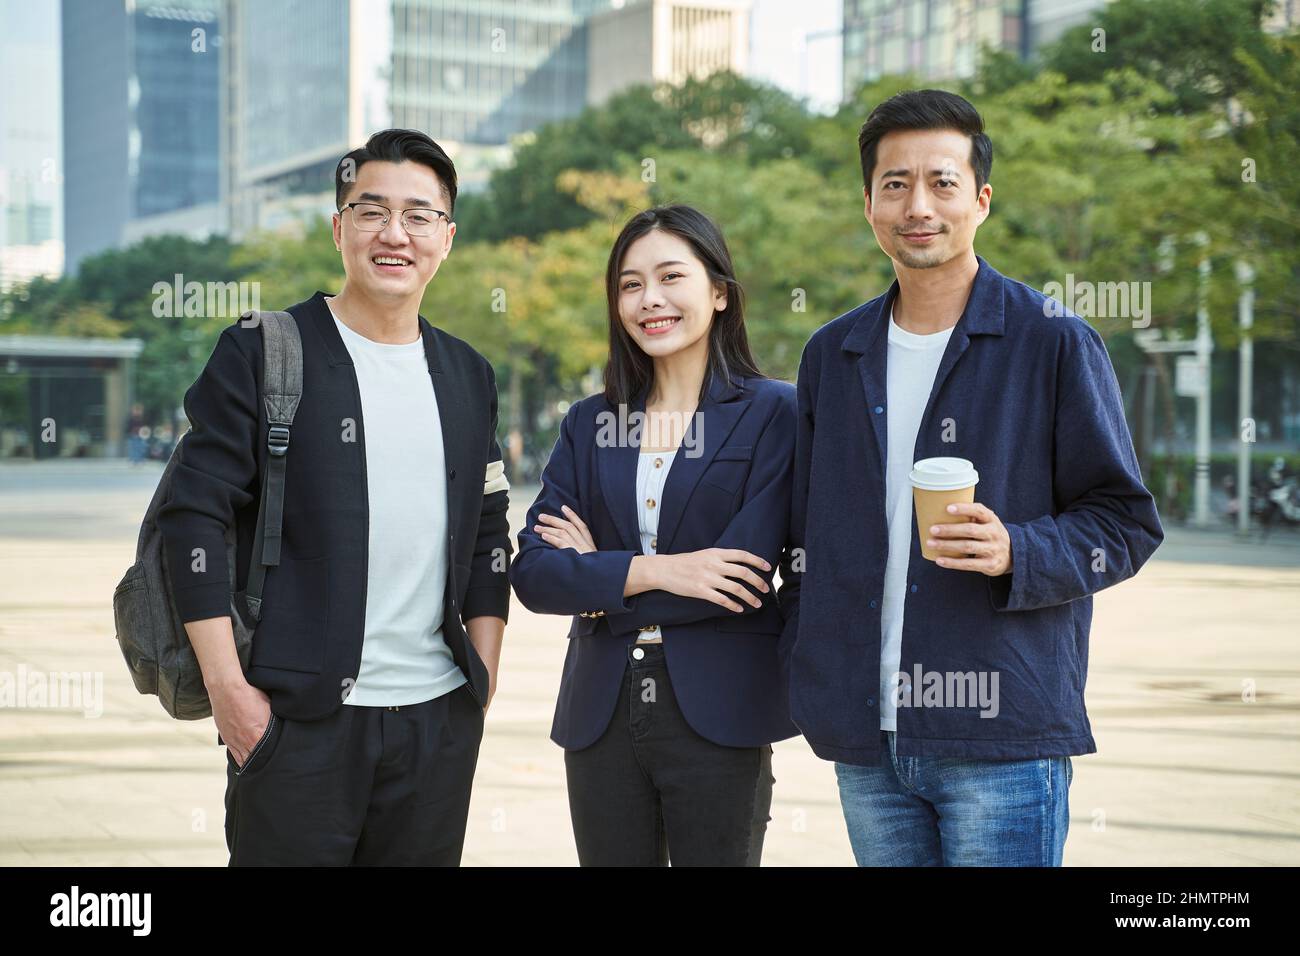 portrait en plein air de trois jeunes asiatiques se tenant heureux et souriants Banque D'Images